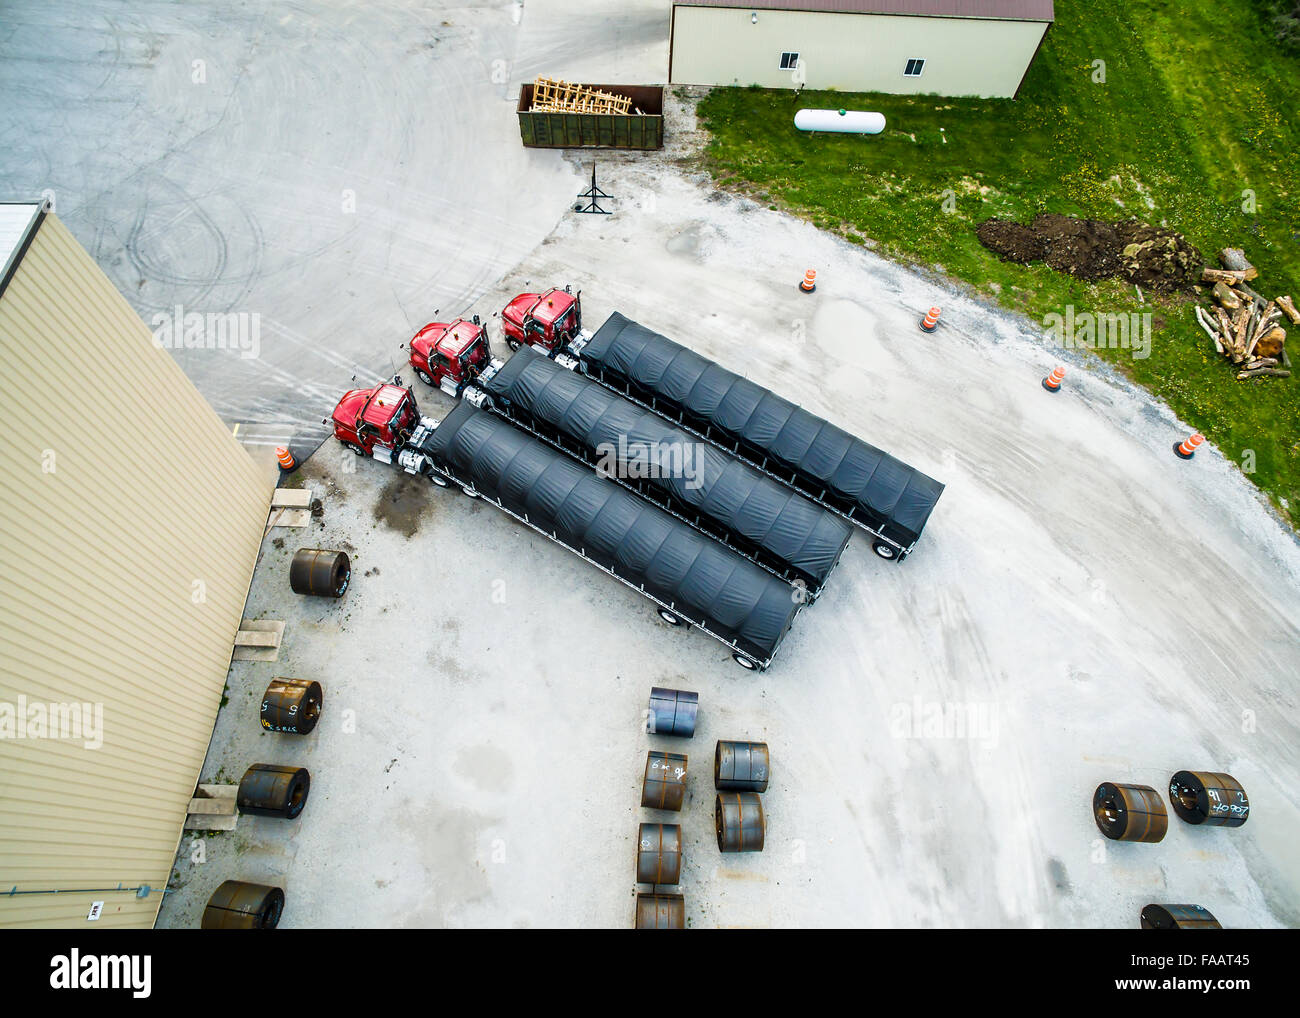 Vue aérienne de semi remorques Tracteur drone de toiles et cadres garé en parking, avec des bobines d'acier formé à rouleau Banque D'Images